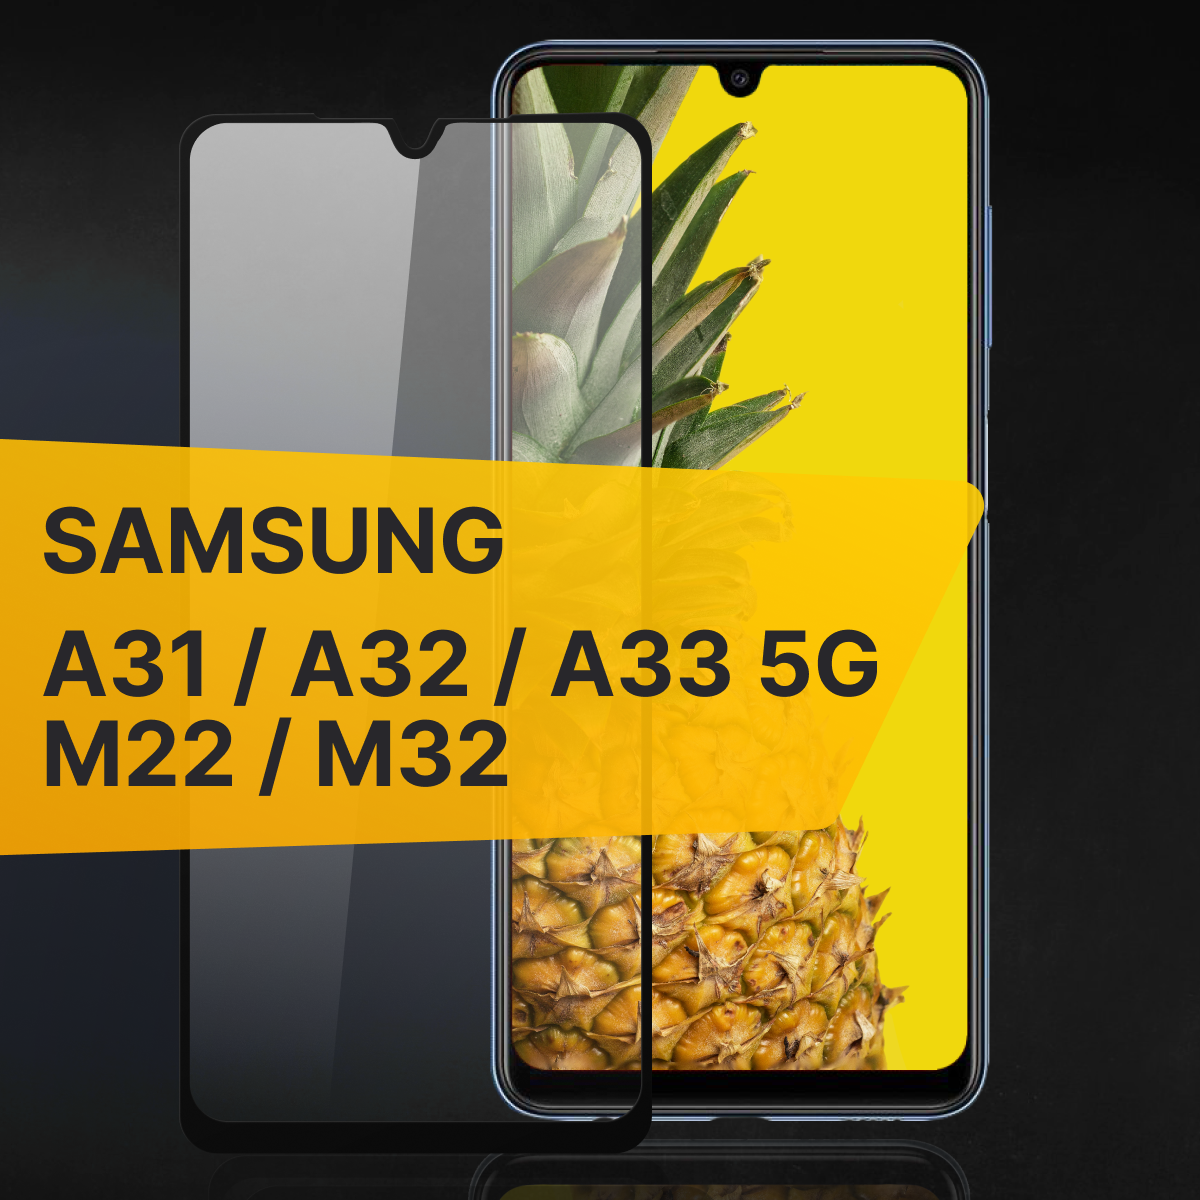 Противоударное защитное стекло для телефона Samsung Galaxy M22, A31, A32, A33 5G, M32 / Полноклеевое 3D стекло с олеофобным покрытием на смартфон Самсунг Галакси М22, А31, А32 5г, М32 / С черной рамкой